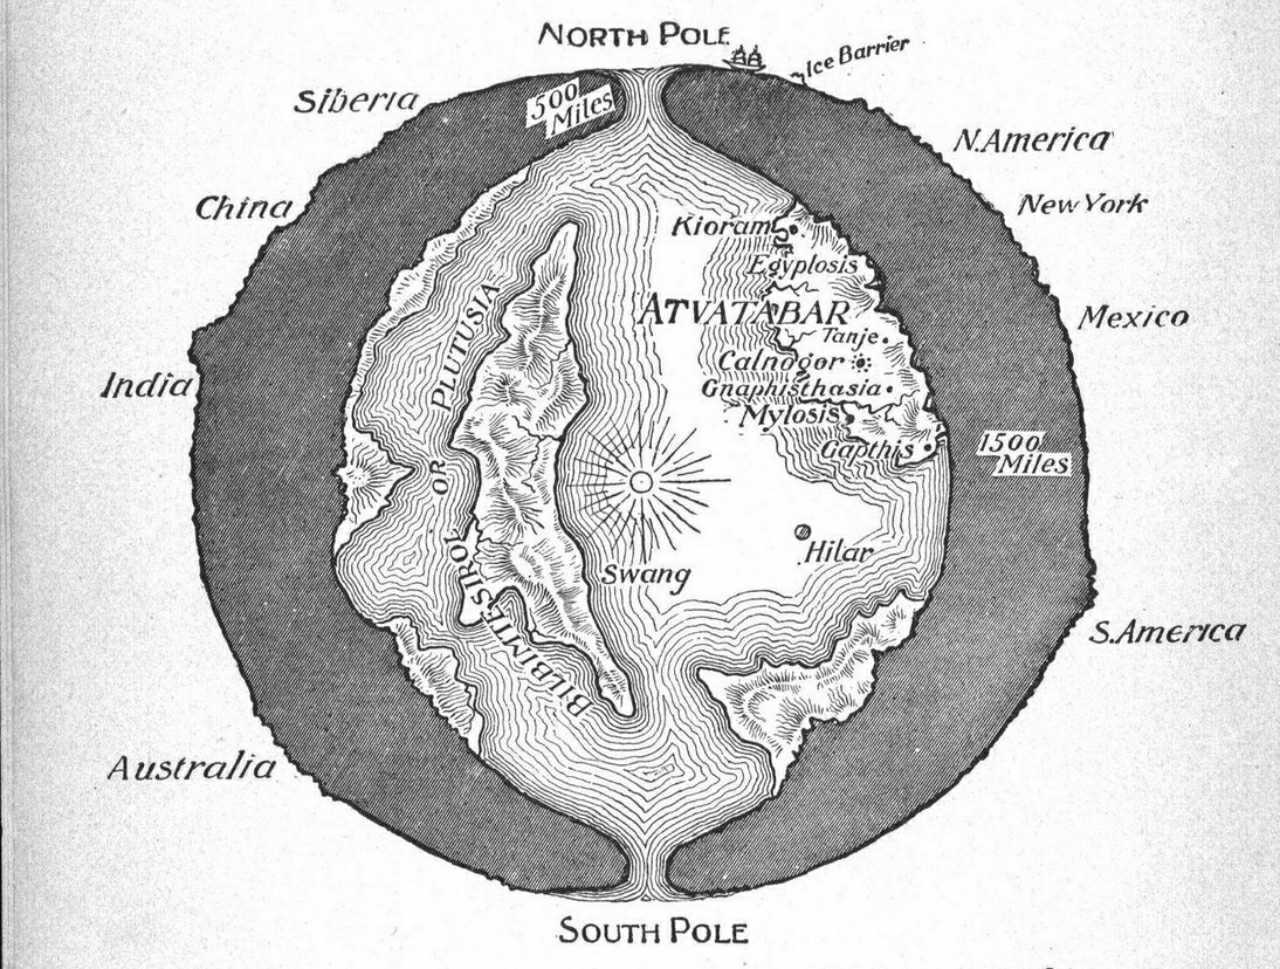 Ένα σχέδιο διατομής του πλανήτη Γη που δείχνει τον "Εσωτερικό Κόσμο" του Atvatabar, από το μυθιστόρημα επιστημονικής φαντασίας του William R. Bradshaw το 1892 Η θεά του Atvatabar